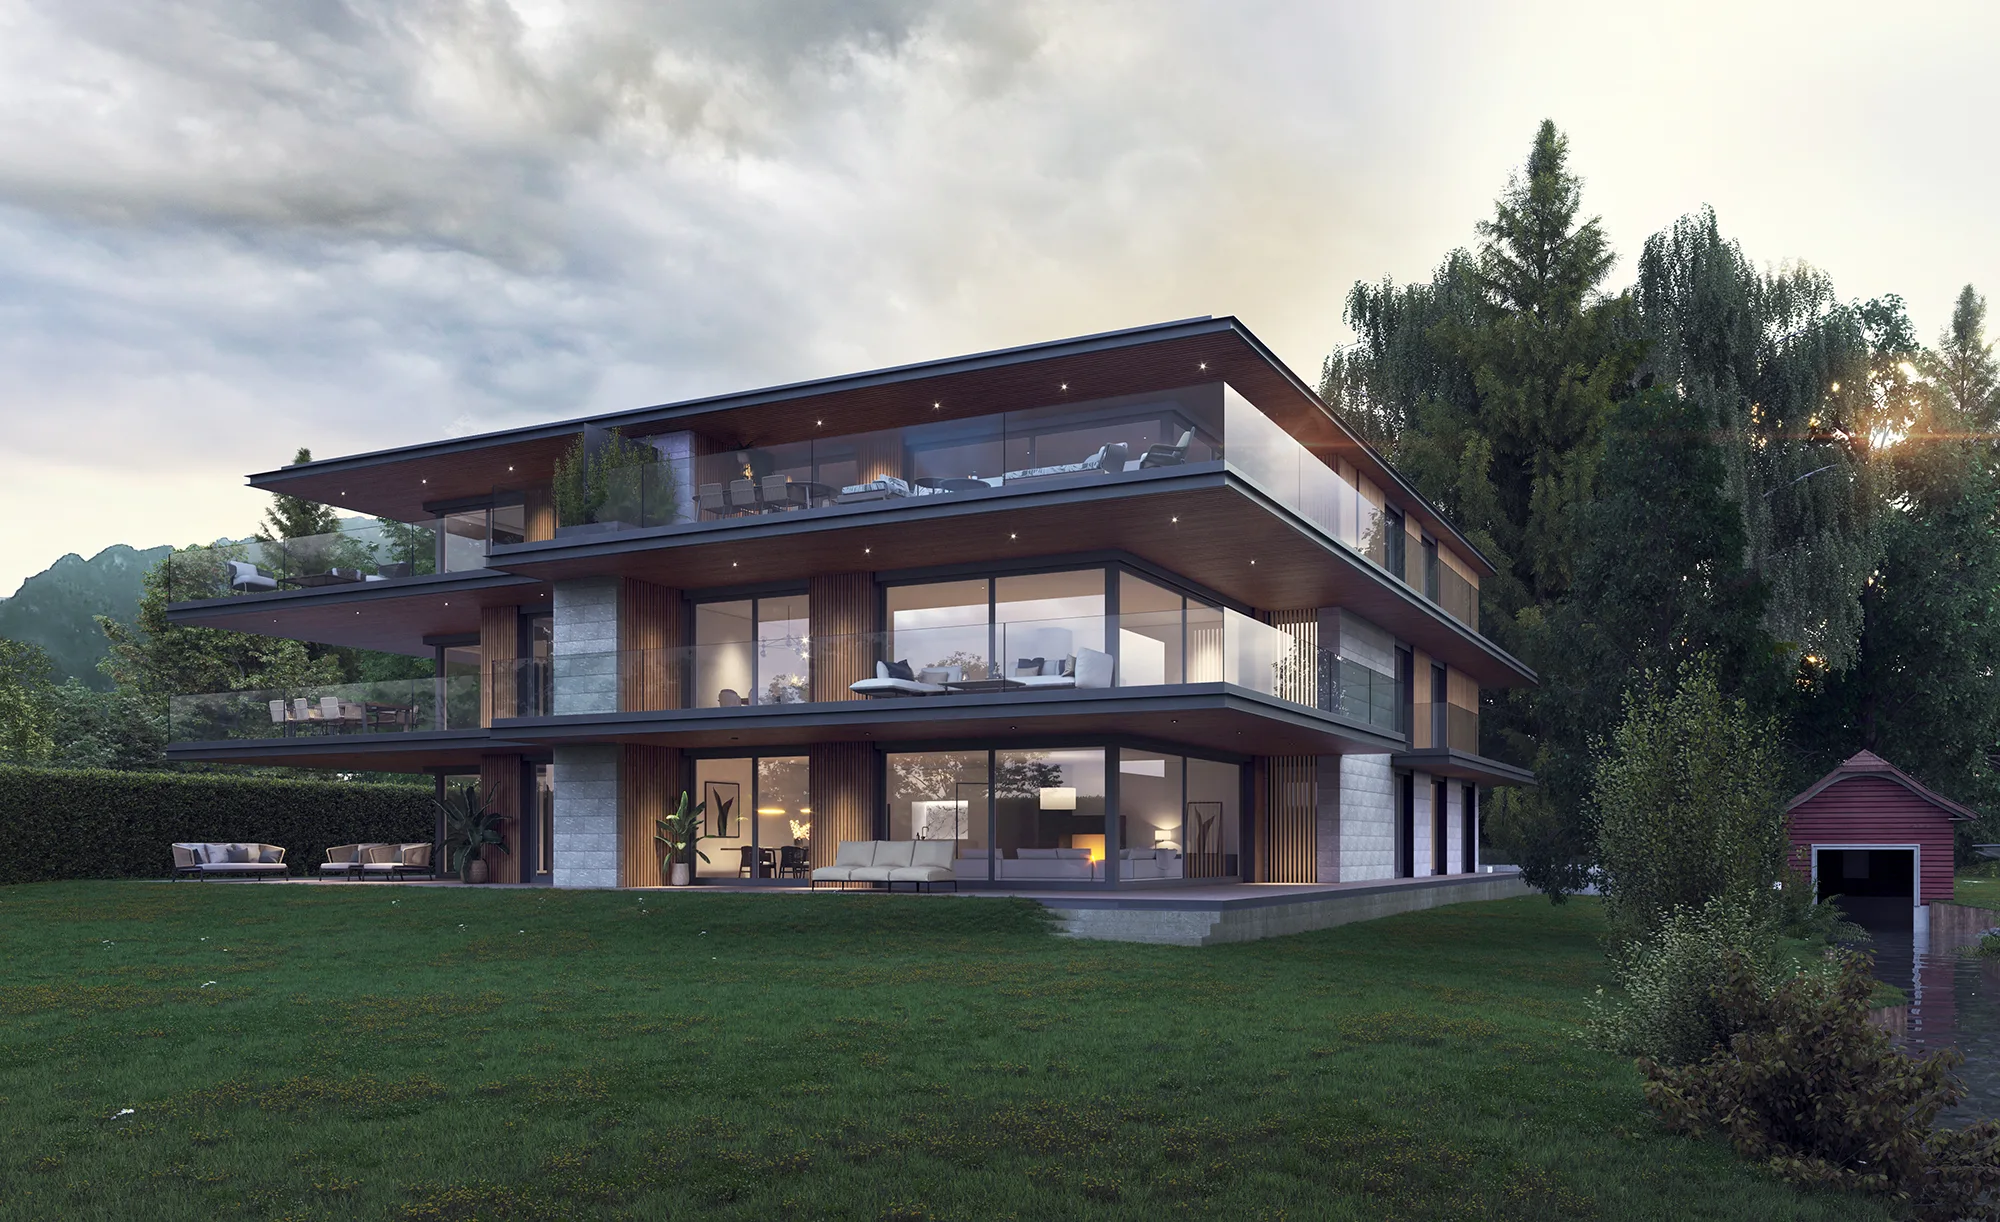 Aussenvisualisierung eines Einfamilienhauses mit Garten in Thun, Schweiz.